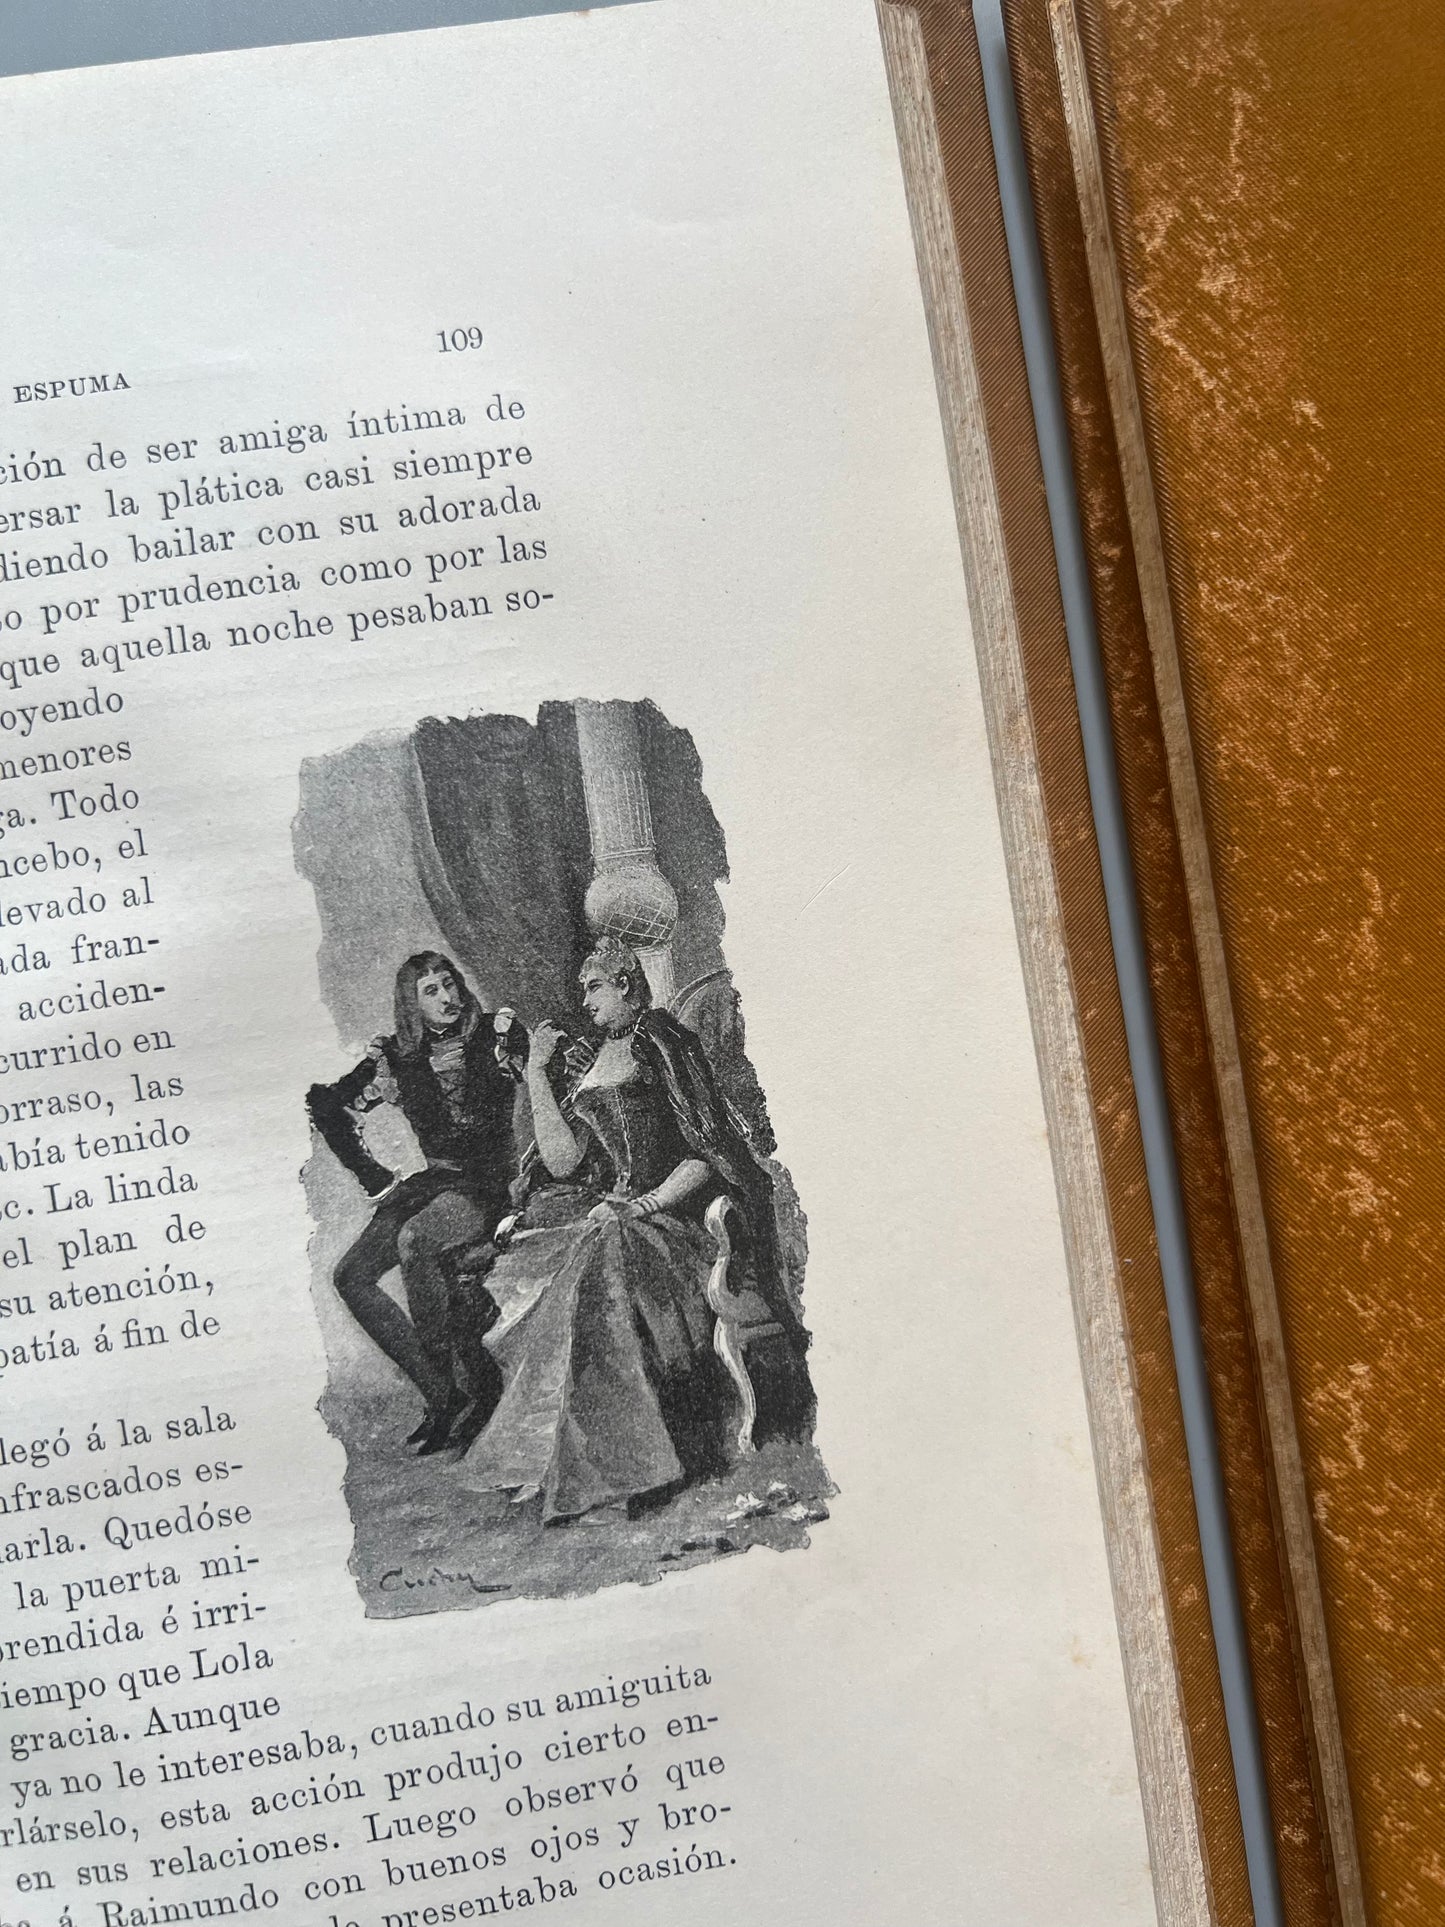 La espuma, Armando Palacio Valdés - Imprenta de Henrich y Cª en comandita, 1890